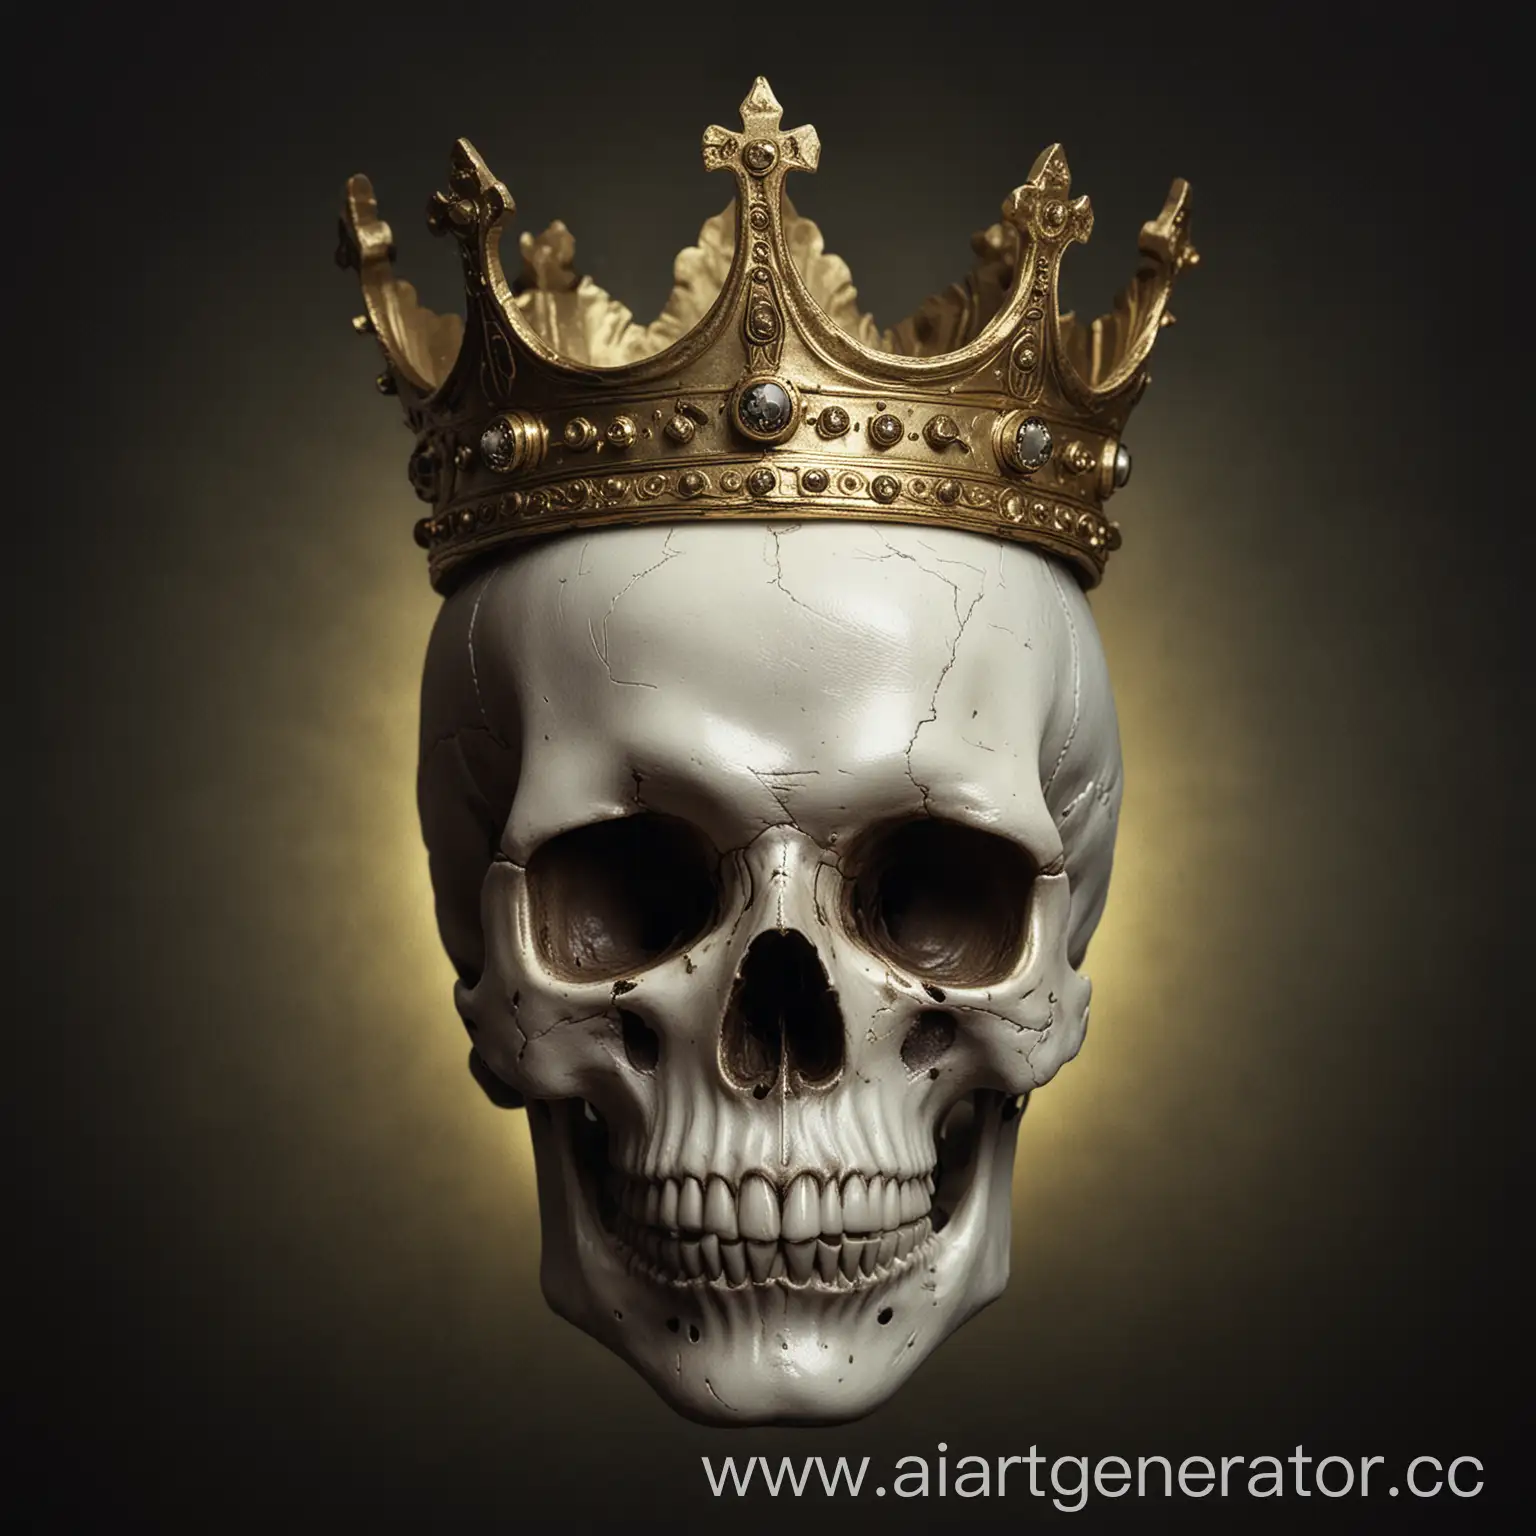 белый череп с темными выямками под глаза,на голове его корона из золота на темном фоне